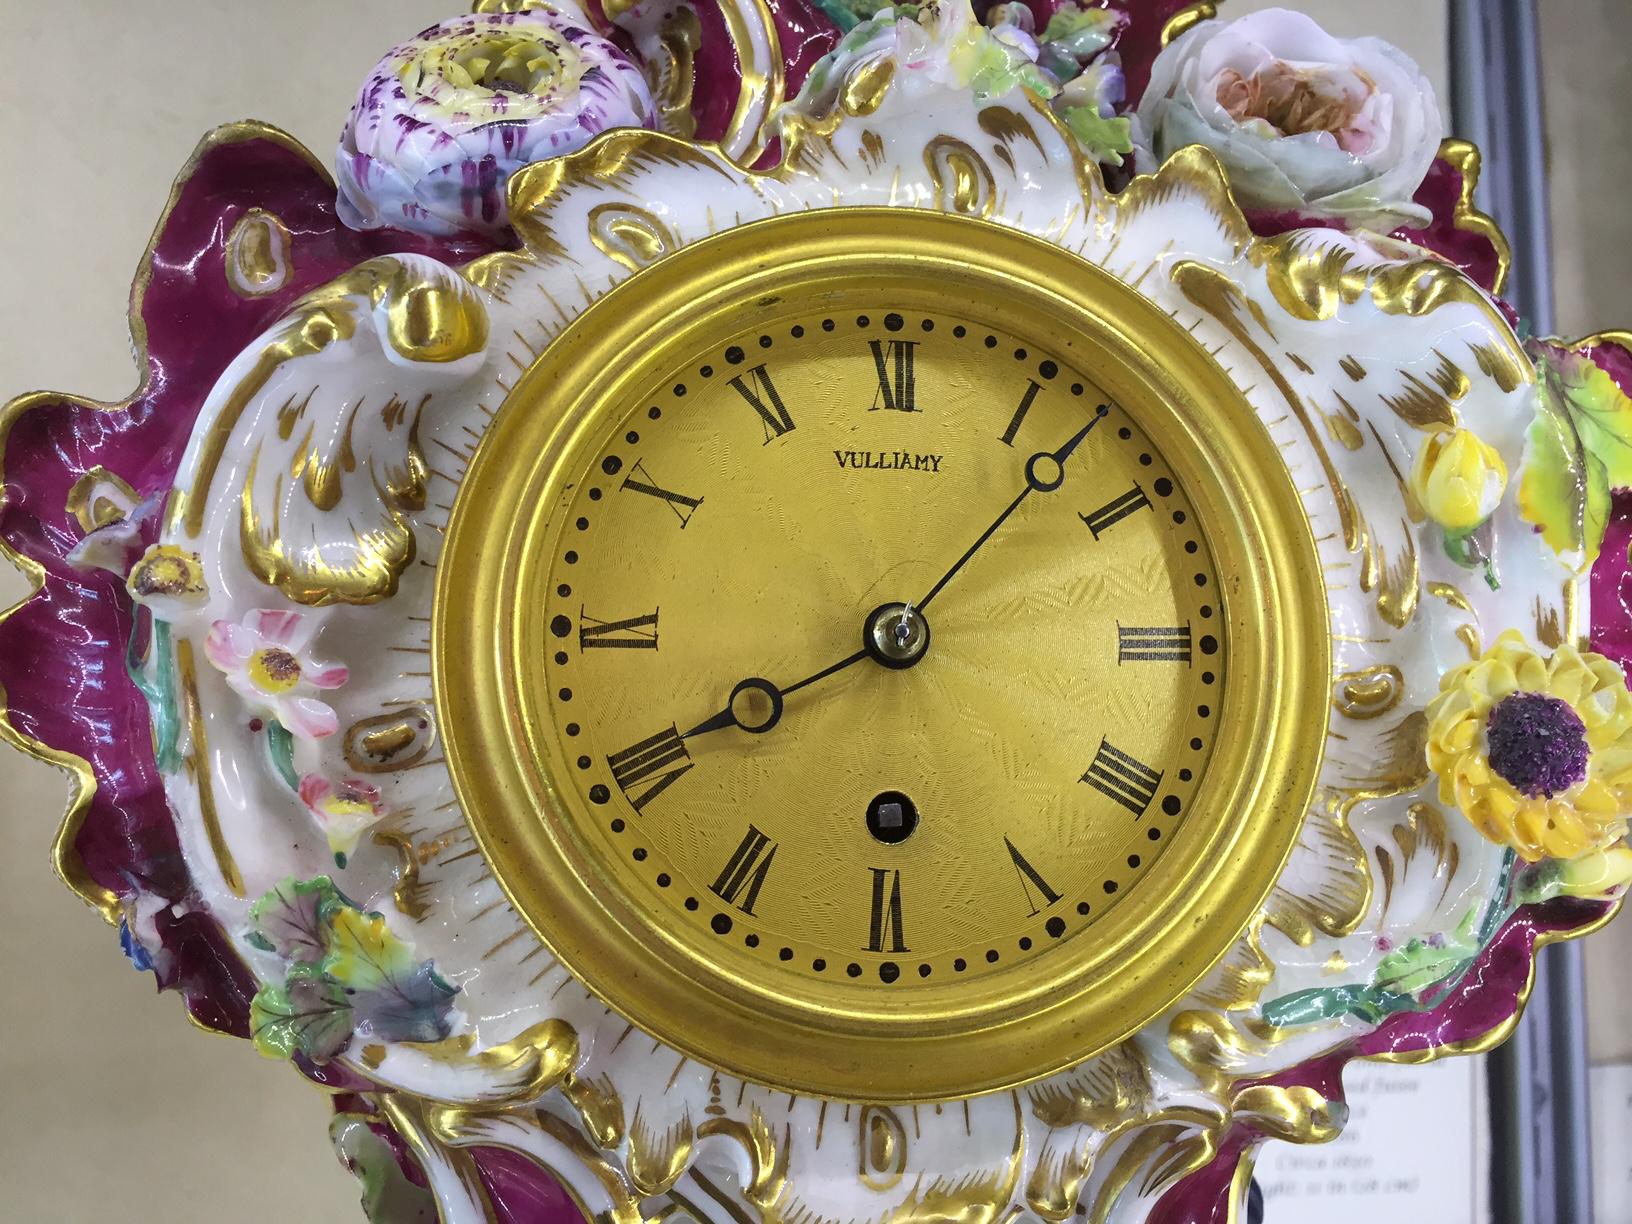 Eine feine Coalport Porzellan Uhr aus dem frühen 19. Jahrhundert von diesem berühmten Hersteller.

Das aufwändig gestaltete, rosafarbene Porzellangehäuse ist mit exotischen Vögeln und Blumen auf Schneckenfüßen sowie mit vergoldetem Schnörkel- und